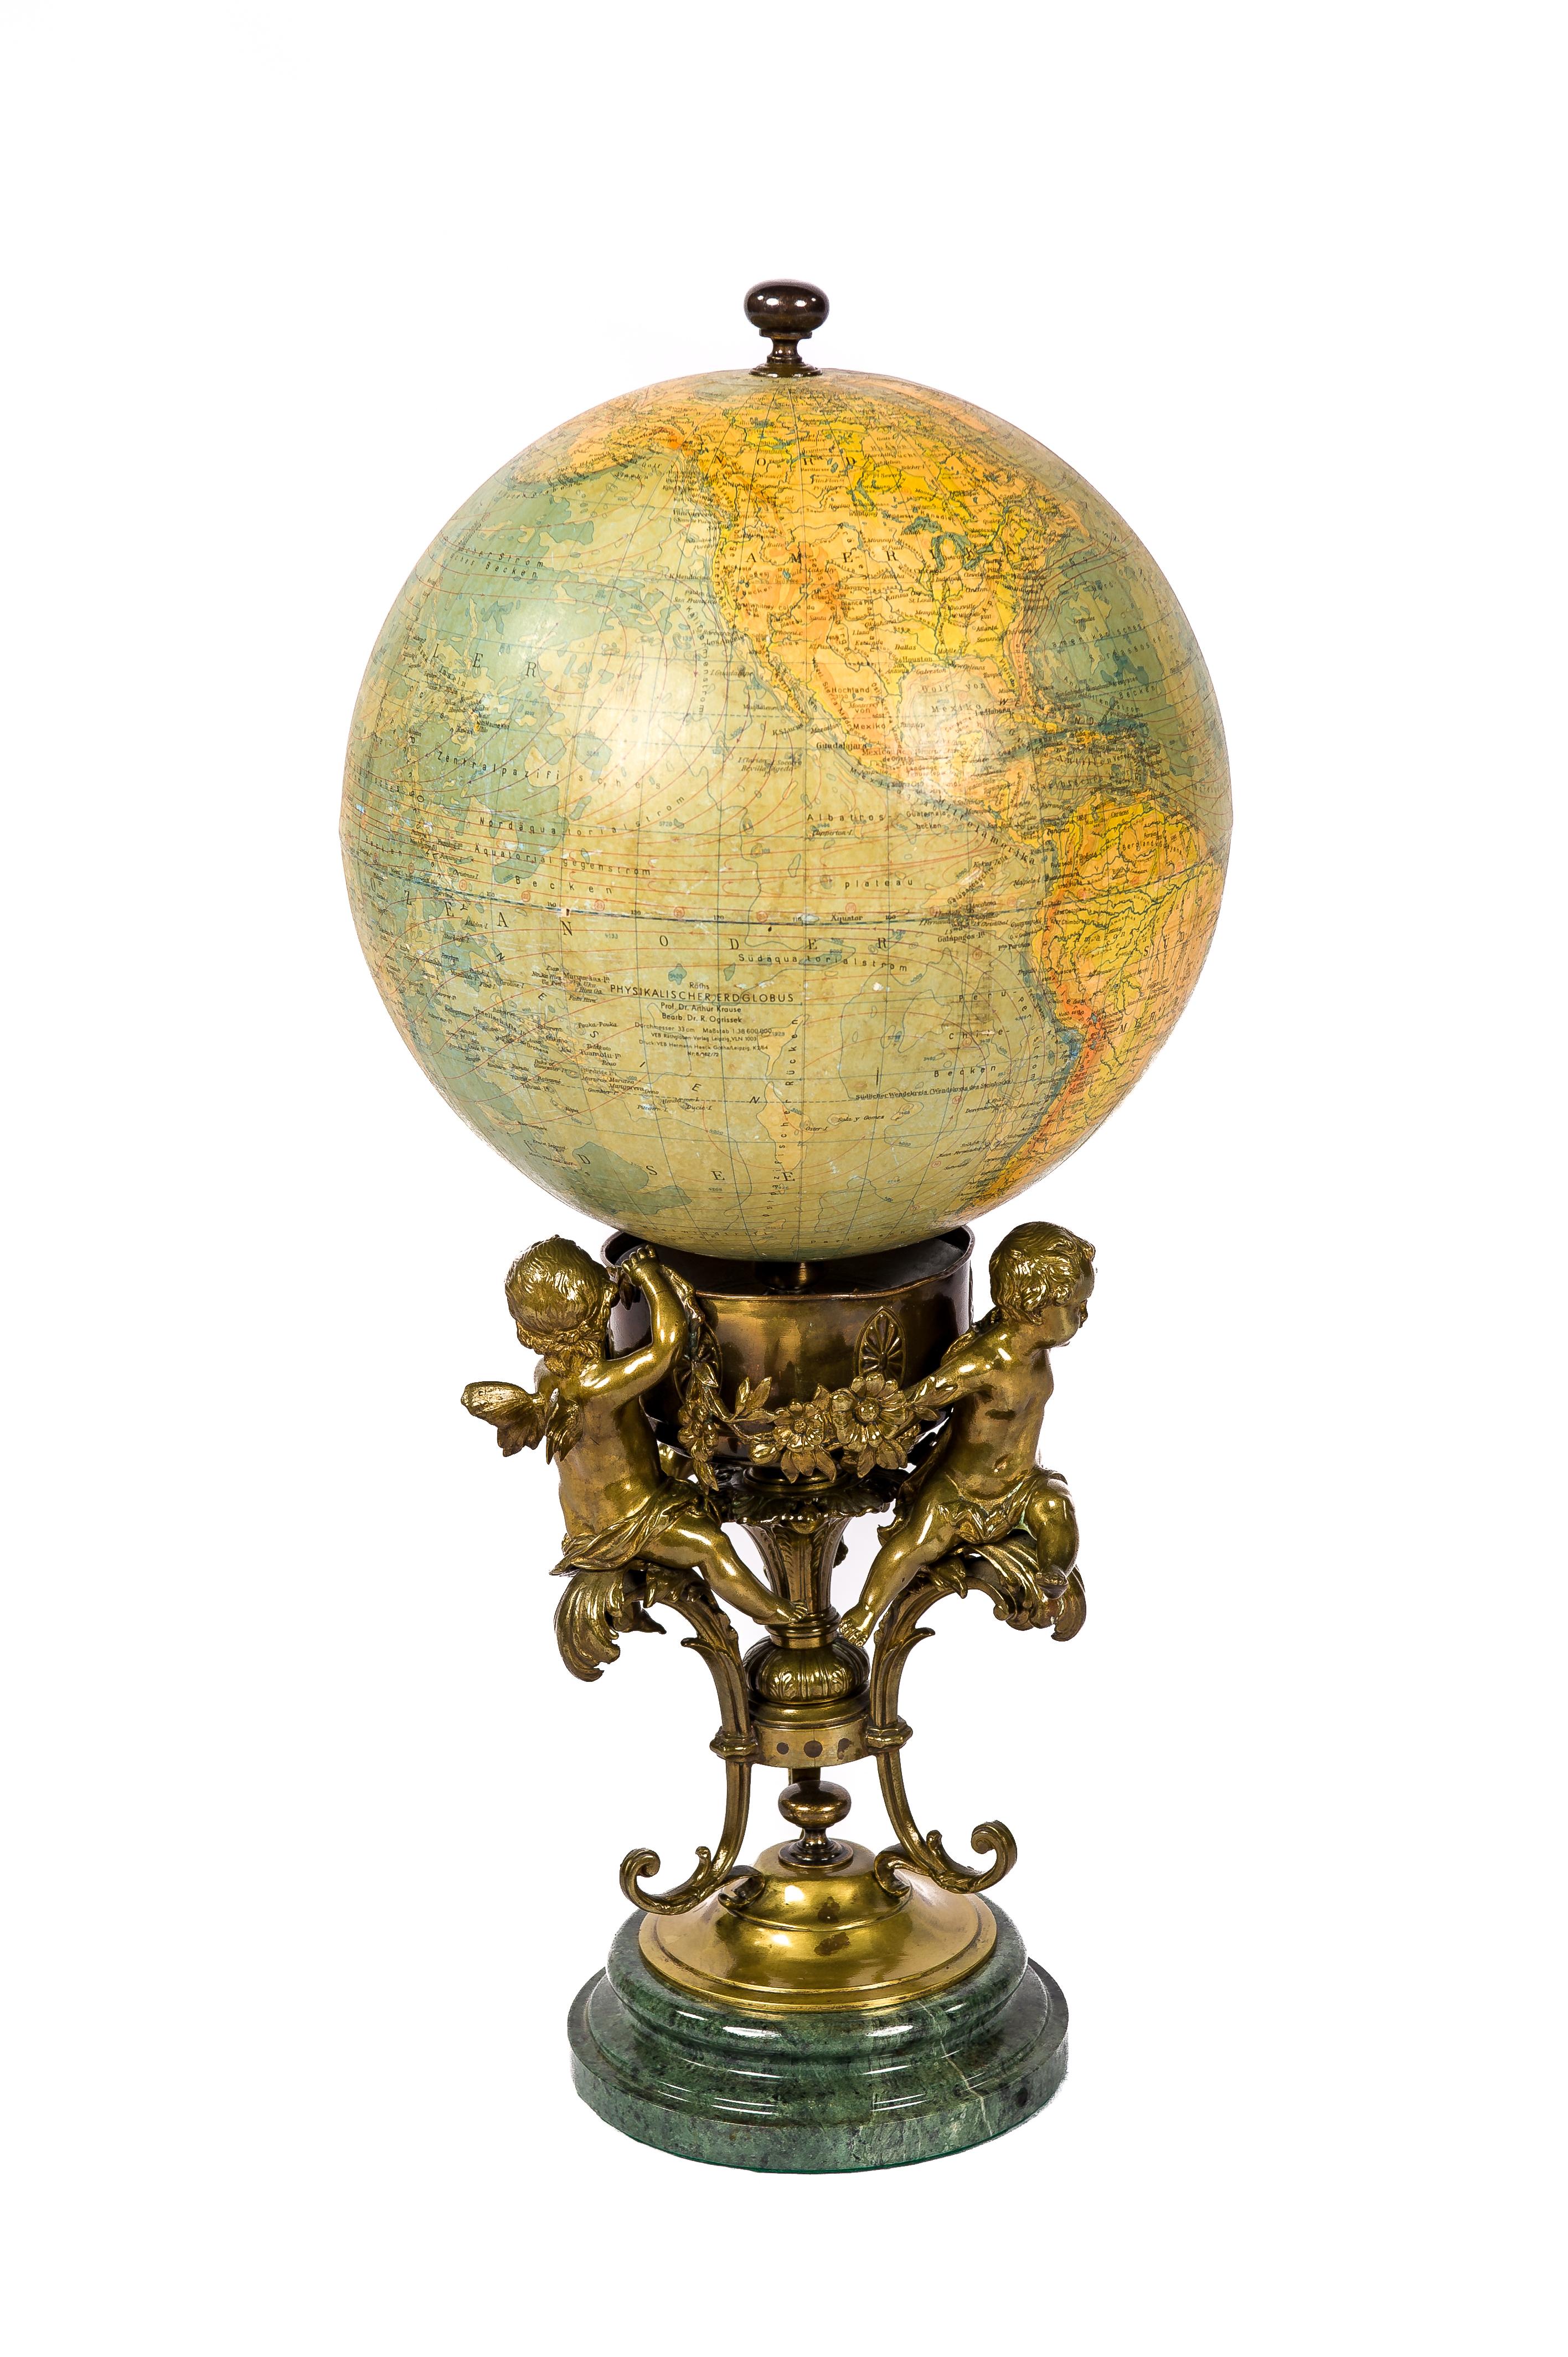 Globe terrestre ancien du professeur Dr Arthur Kraus, fabriqué par l'institut allemand Ráths. Le globe a une échelle de 1 : 38.600.900. Le globe repose sur une coupe en laiton décorée de trois chérubins ou anges en laiton patiné tenant une guirlande